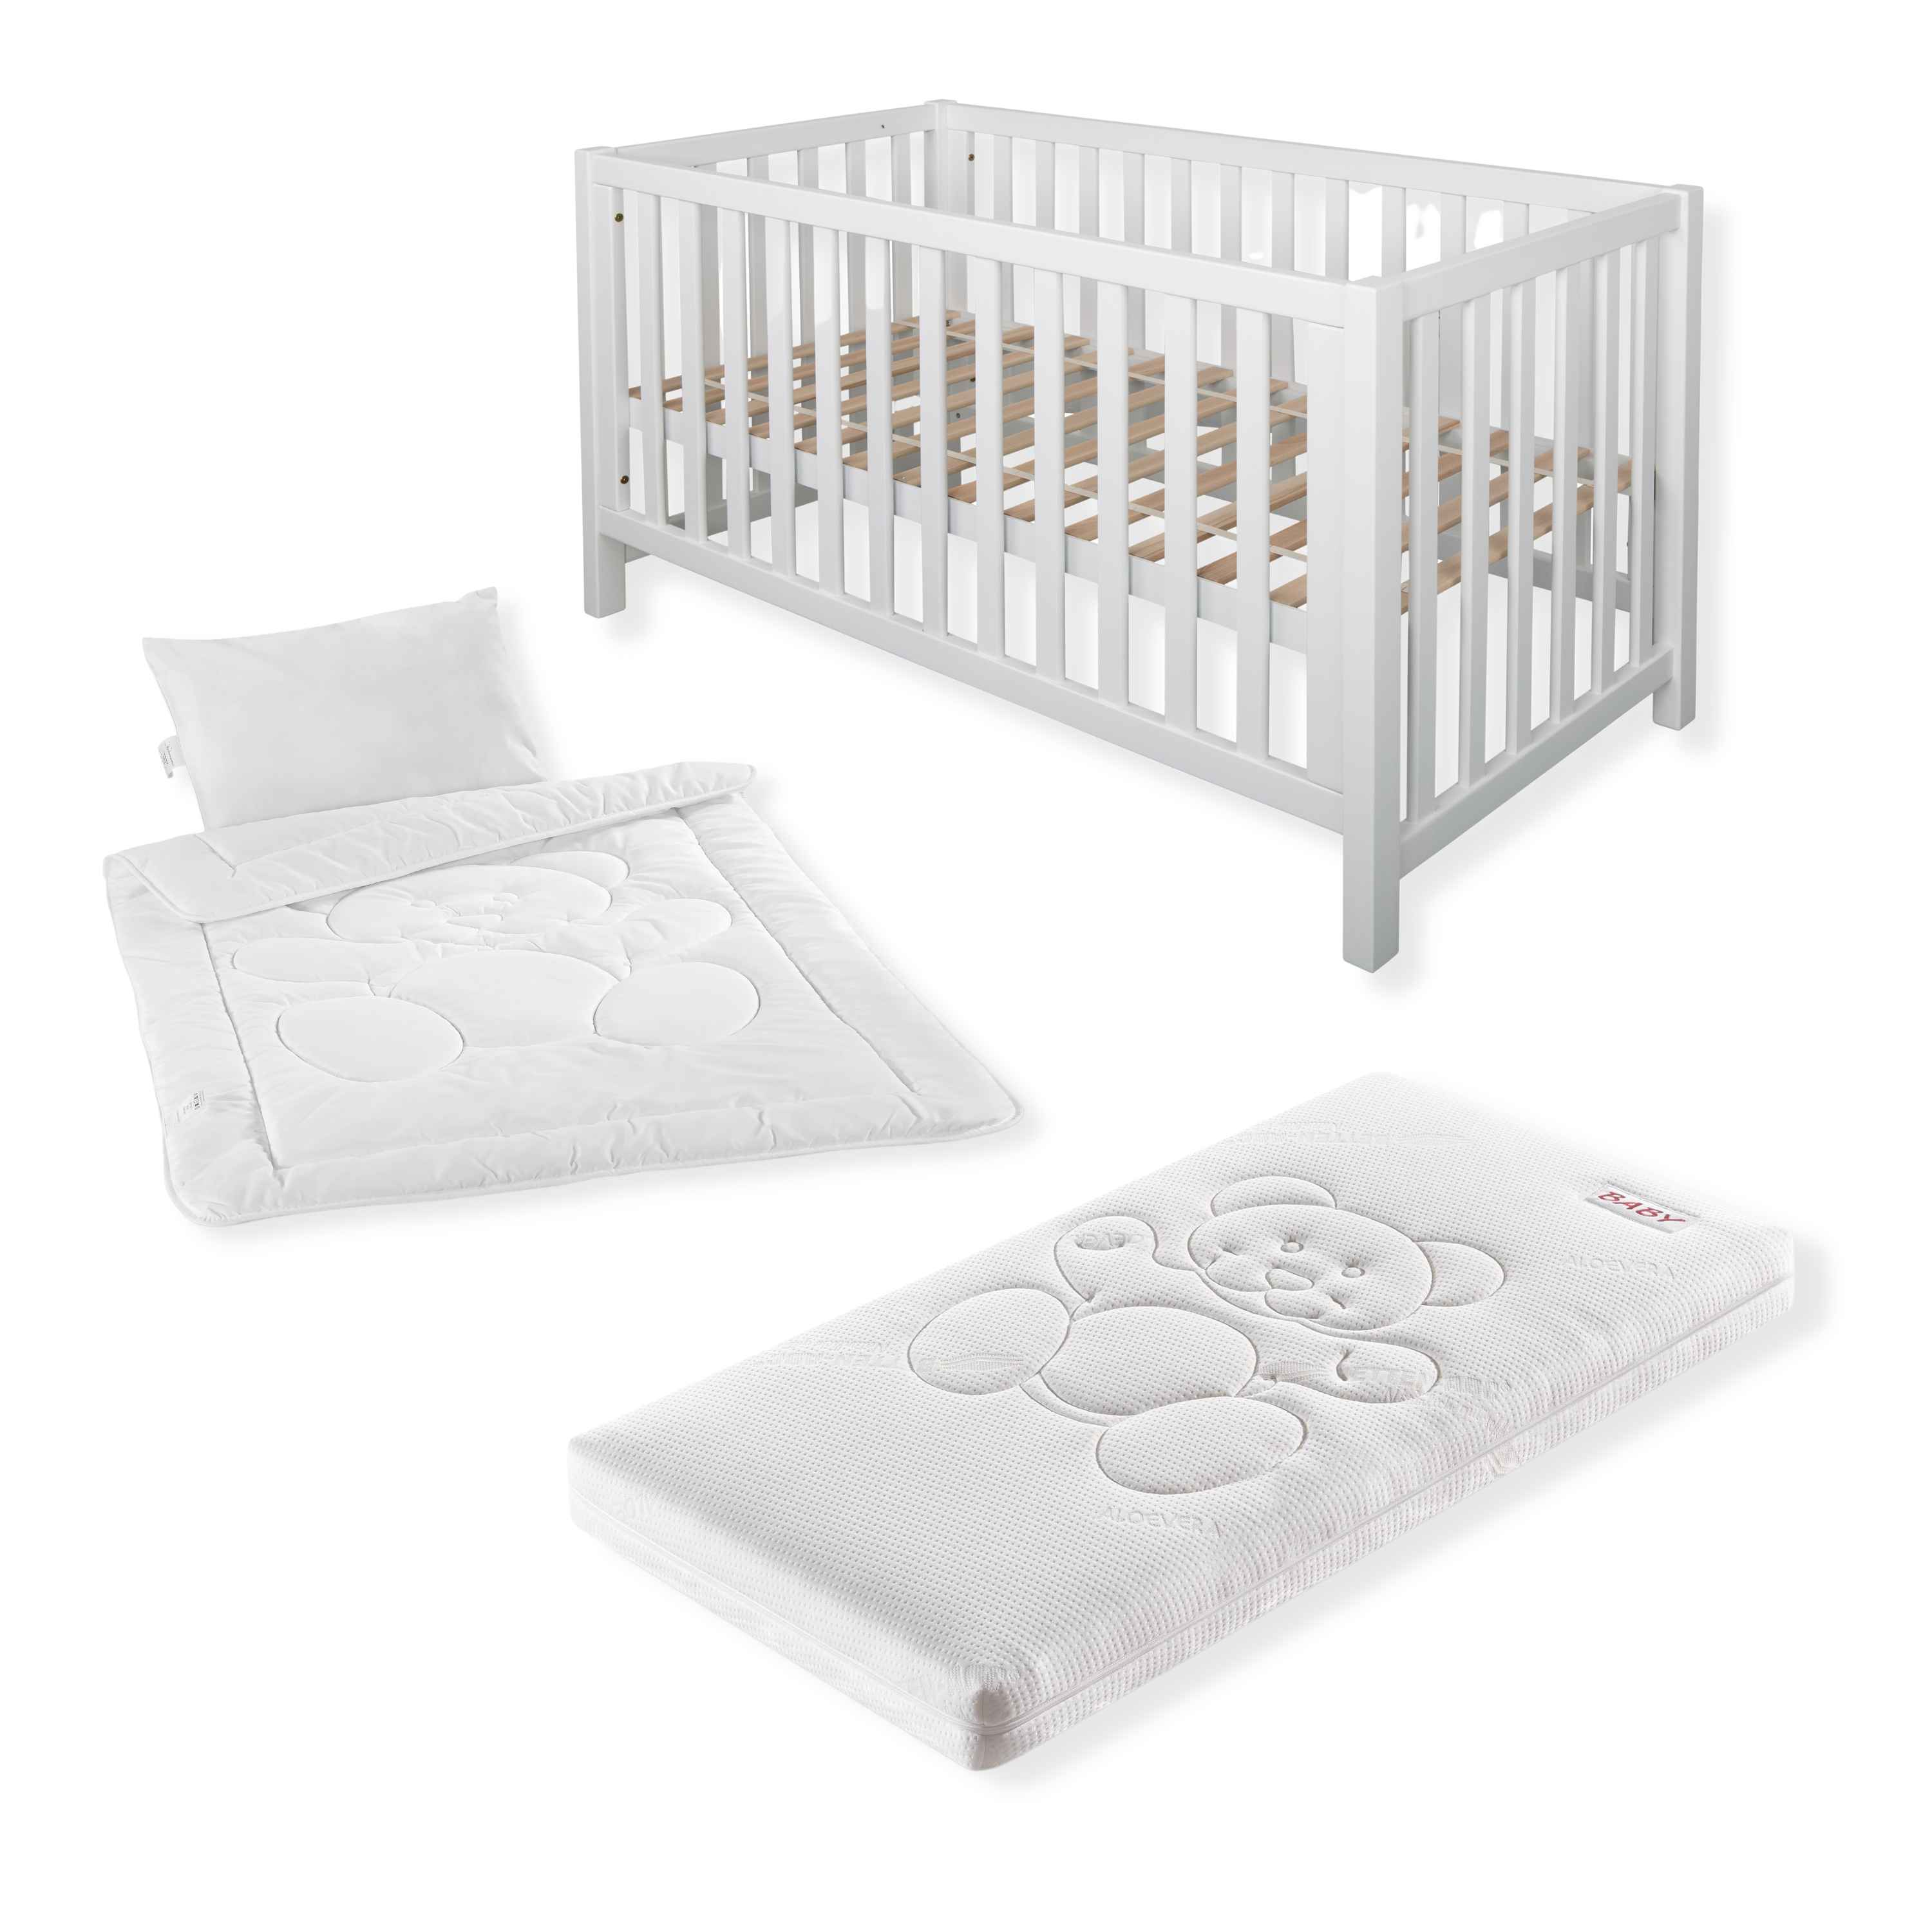 Komplettset Nils classic – Babybett mit Matratze, Decke und Kissen, in der Größe 70x140cm, Farbe: weiß